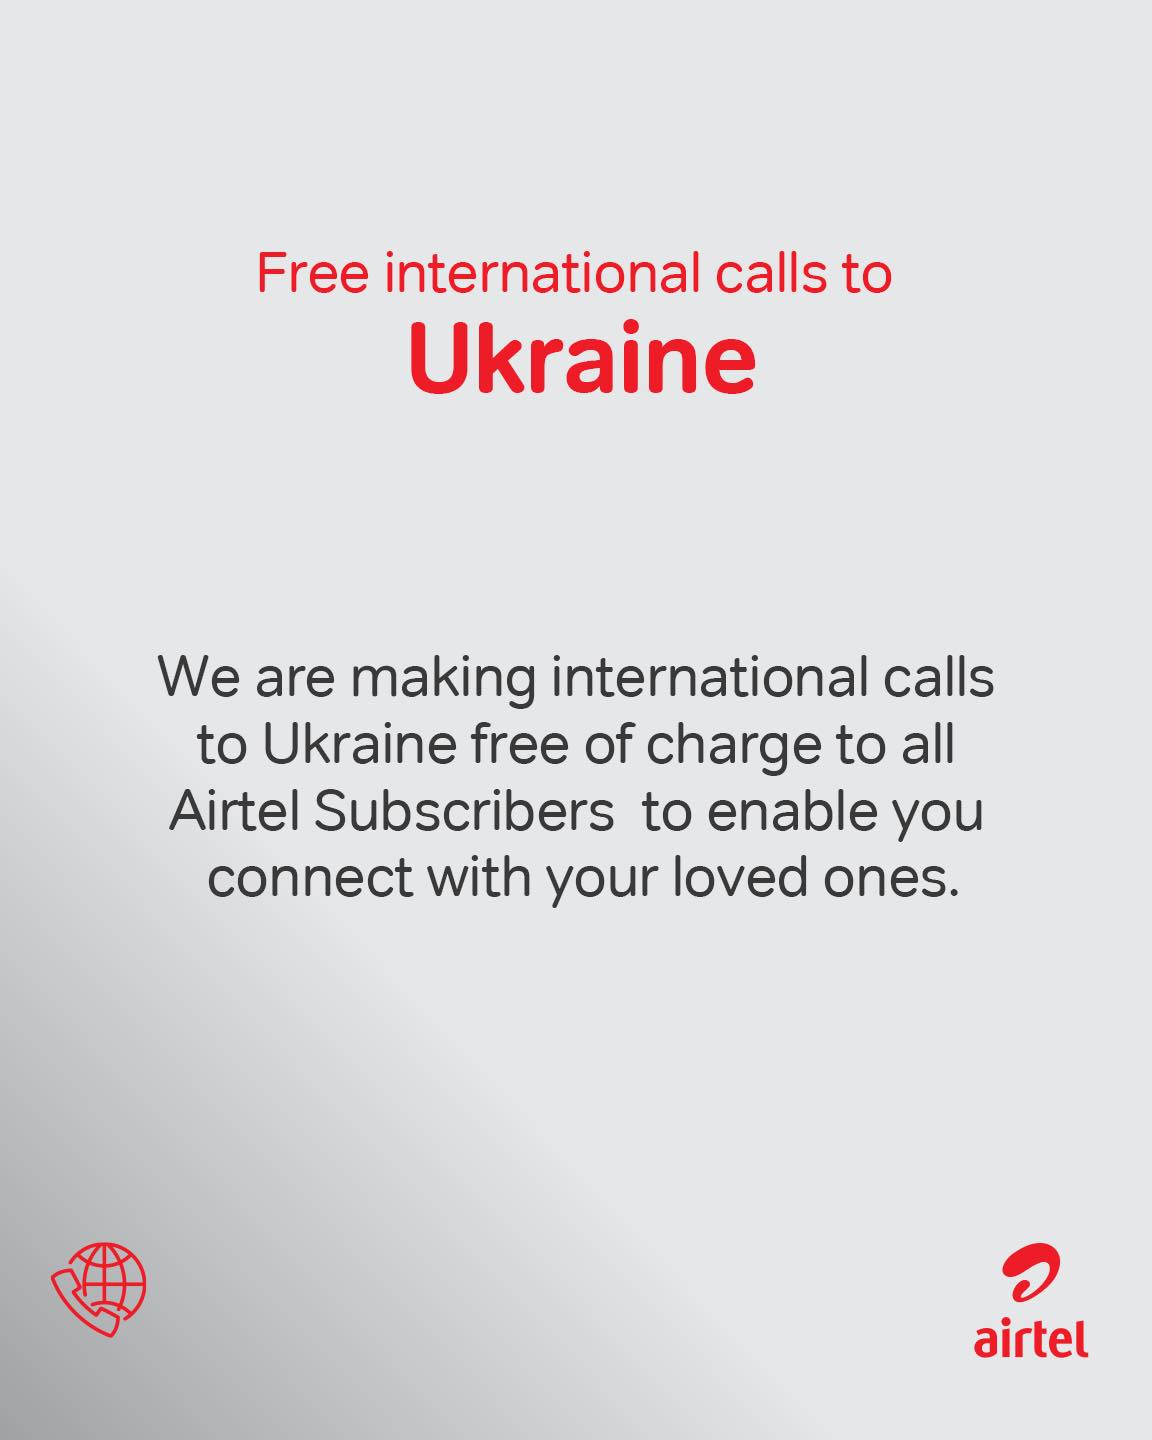 Airtel Free Calls to Ukraine